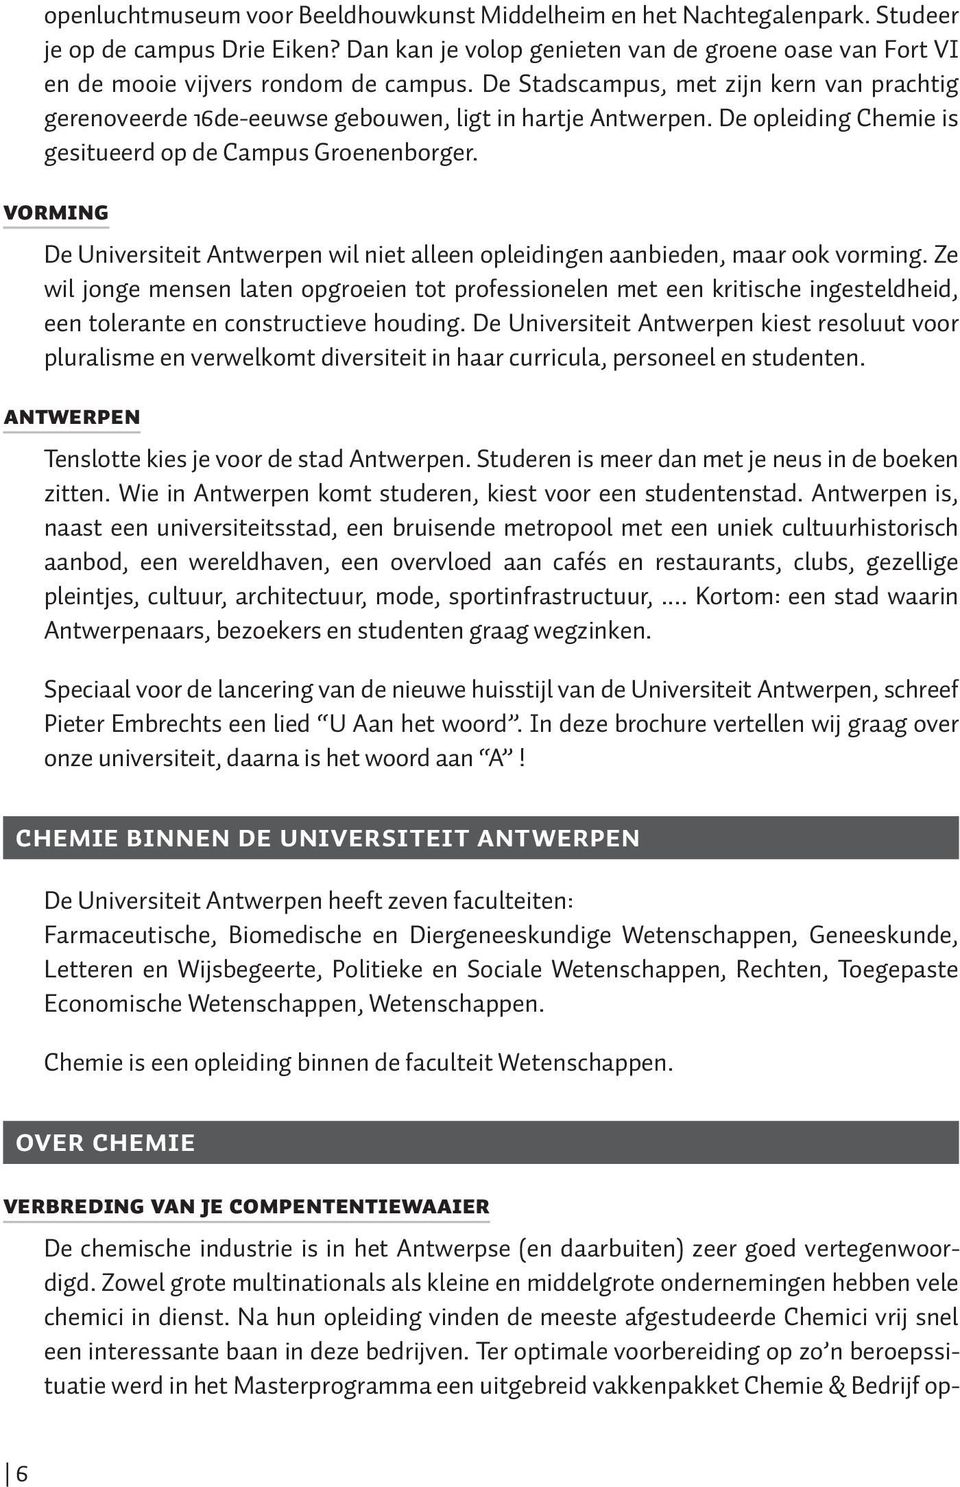 De opleiding Chemie is gesitueerd op de Campus Groenenborger. VORMING De Universiteit Antwerpen wil niet alleen opleidingen aanbieden, maar ook vorming.